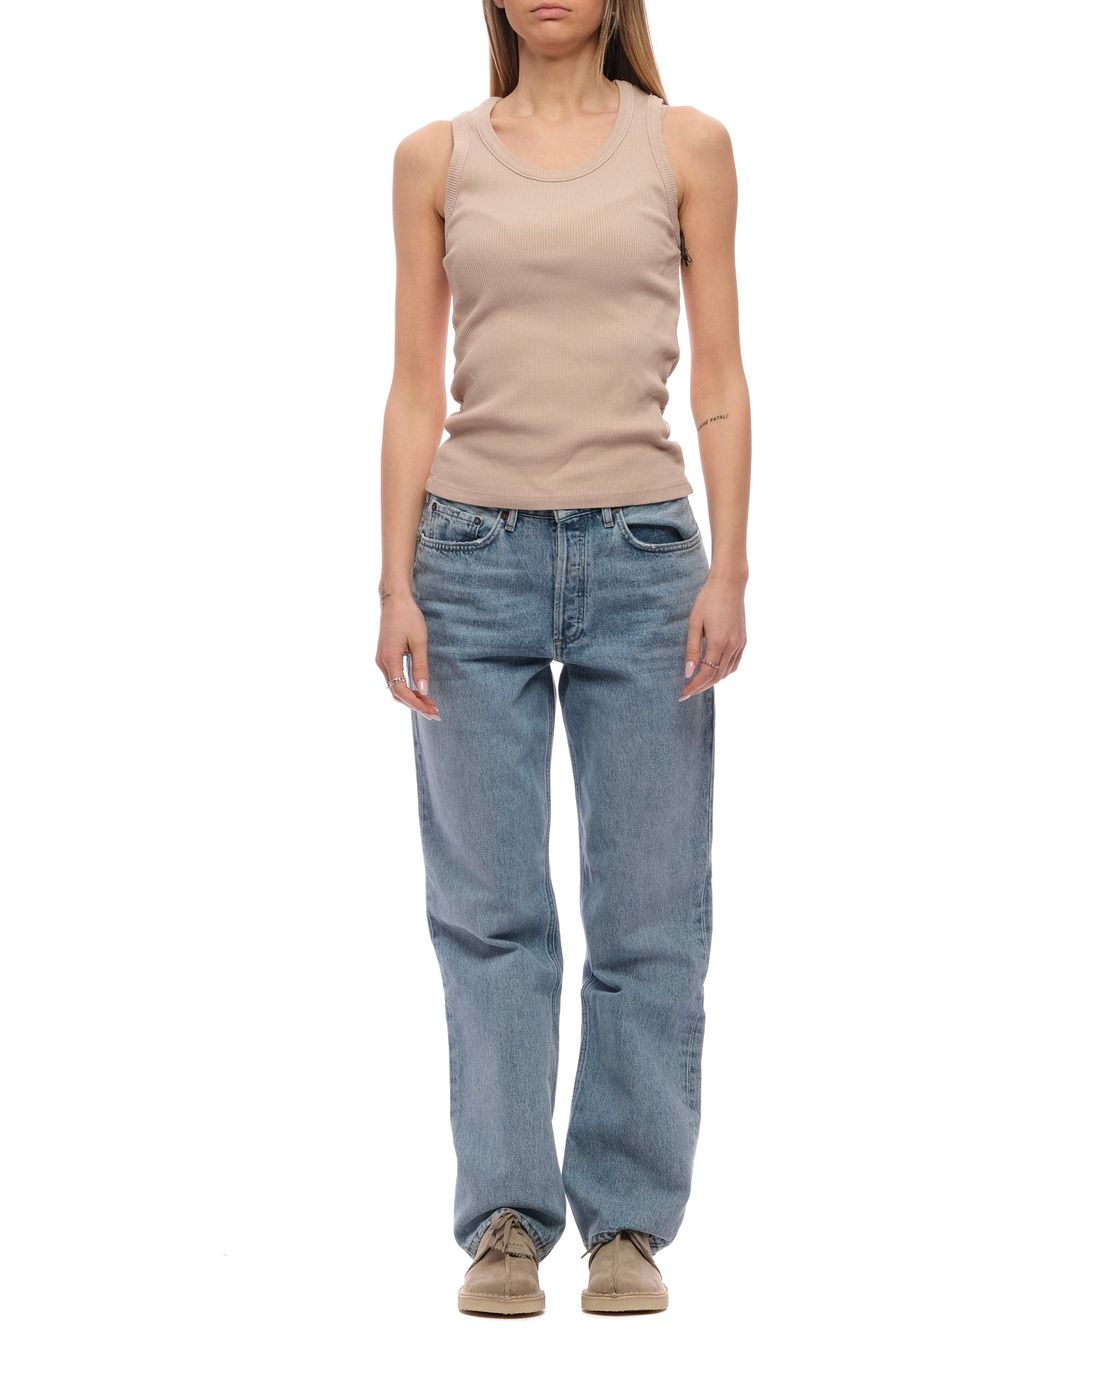 Jeans for women AGOLDE A140C 1141 FICTION